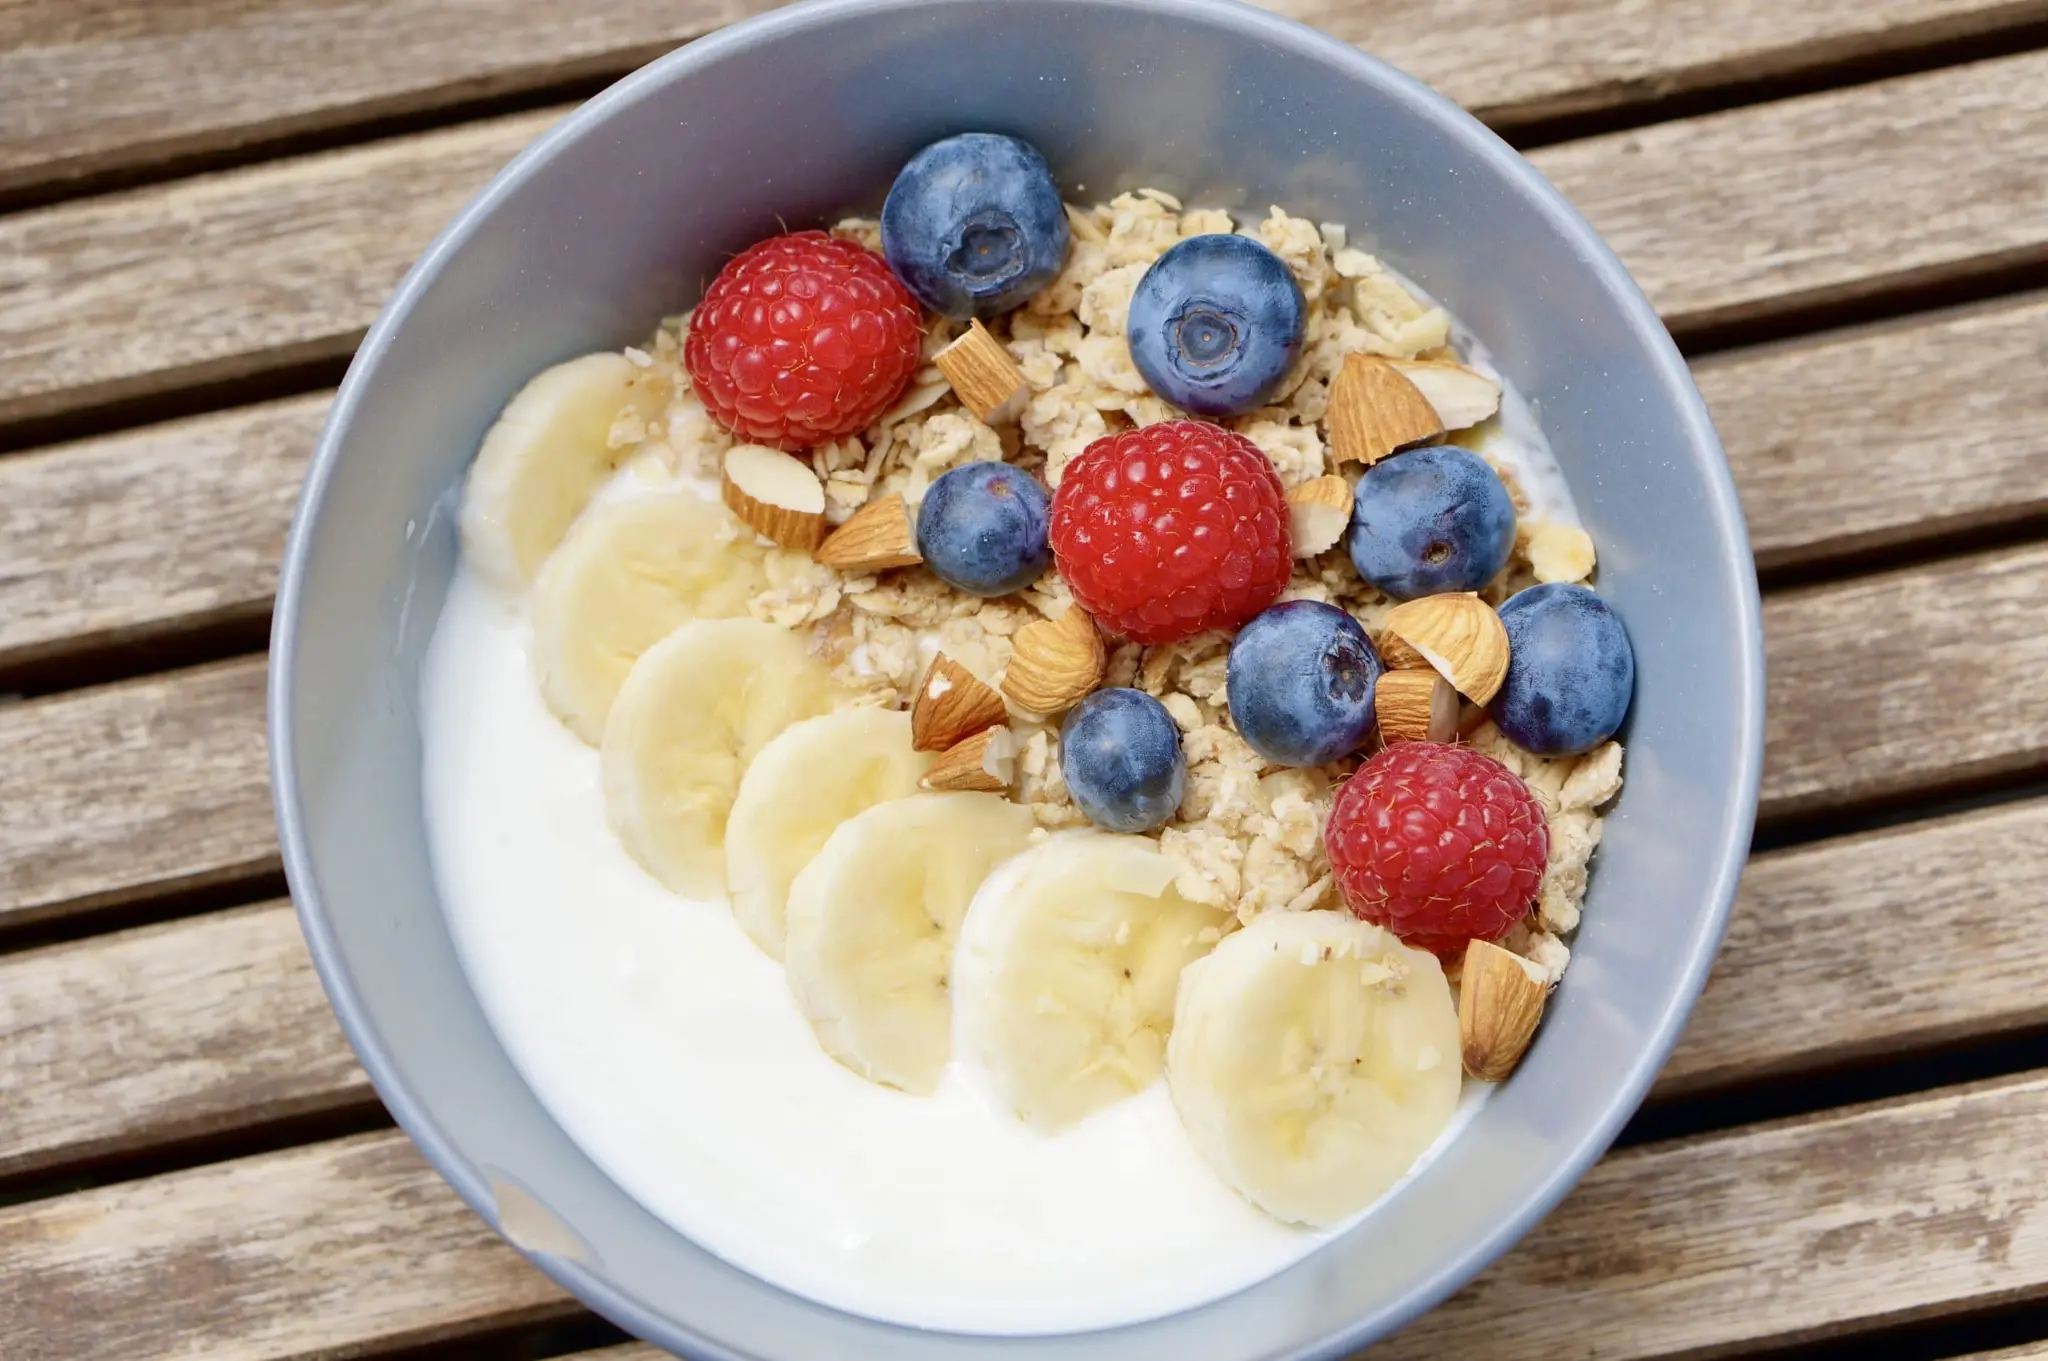 Recipe #7 - Yogurt and Fruit Nectar